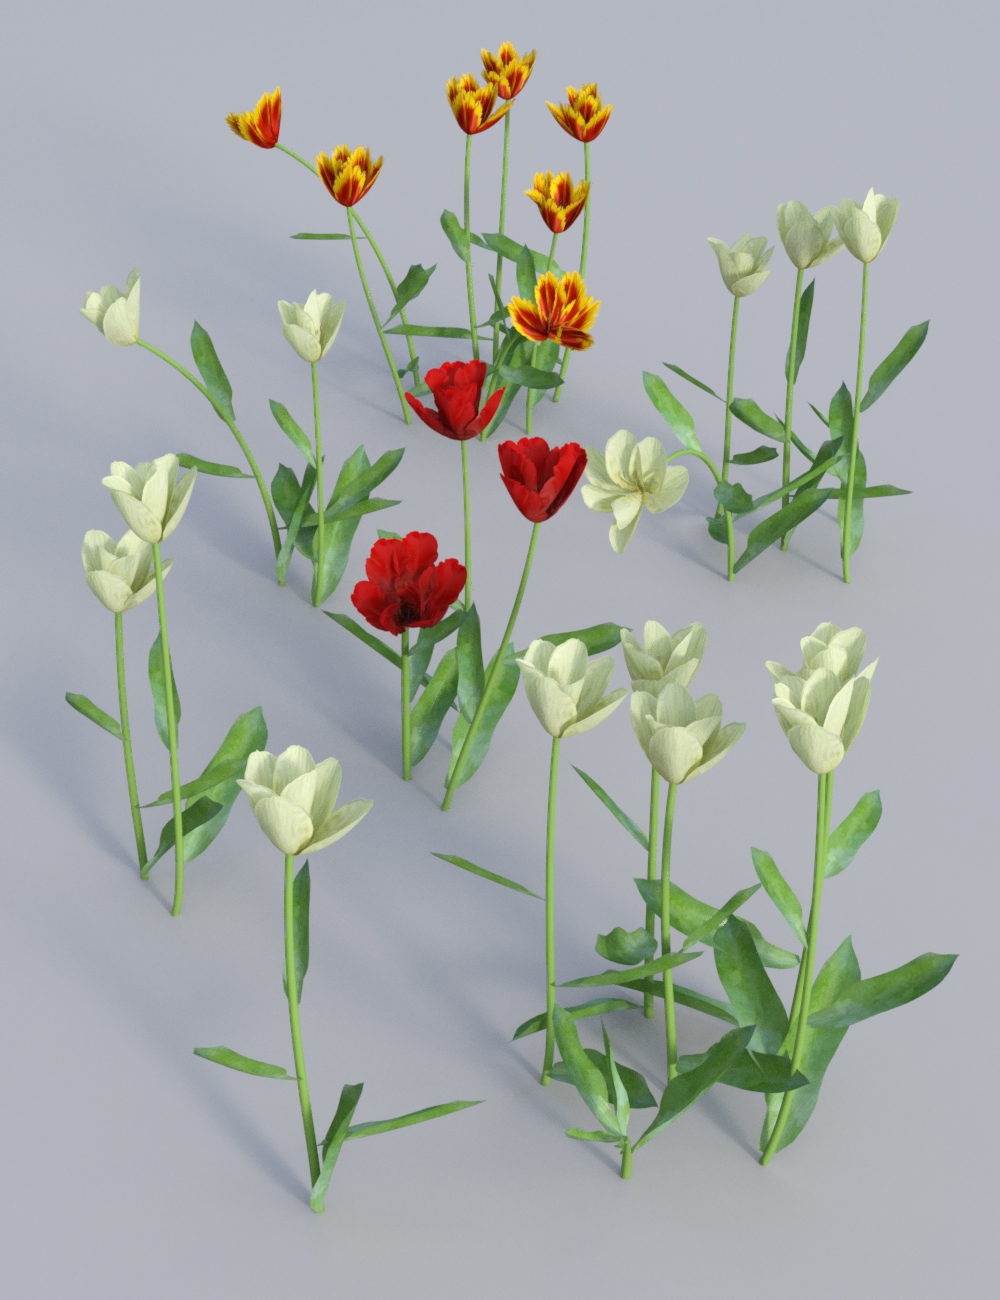 Garden Flowers Vol 2. Tulip Plants by: MartinJFrost, 3D Models by Daz 3D